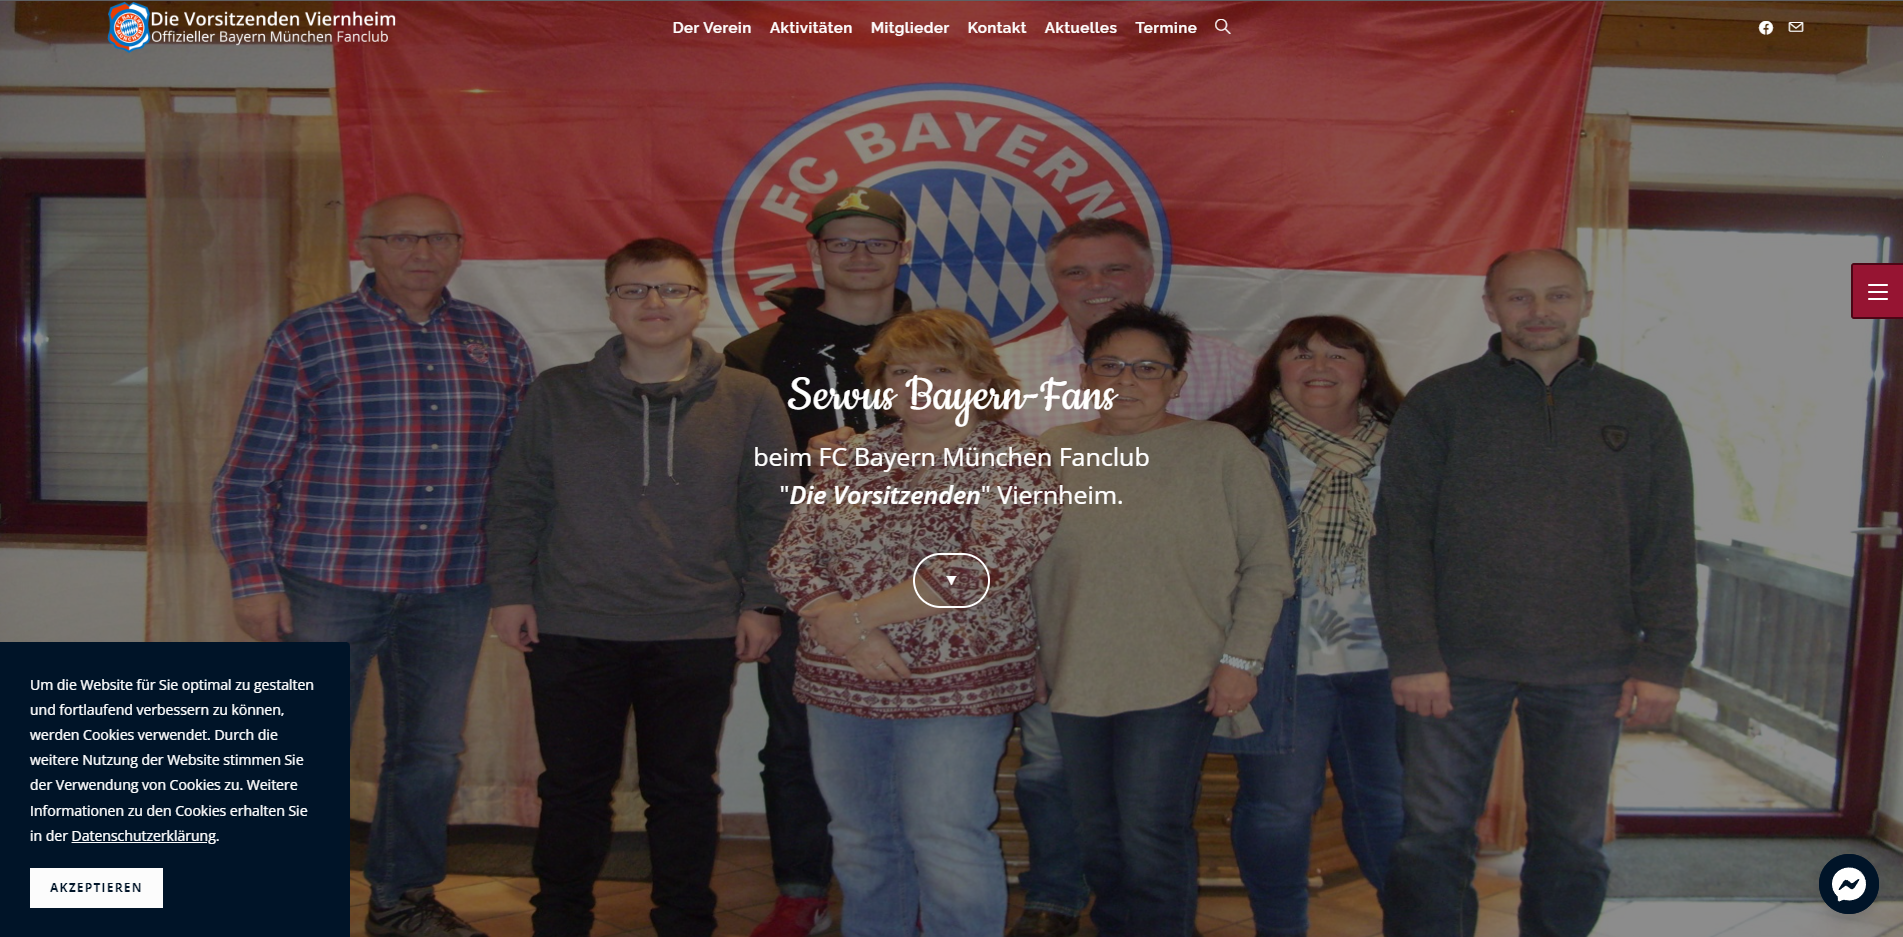 Die Vorsitzenden Viernheim – Offizieller FC Bayern München Fanclub